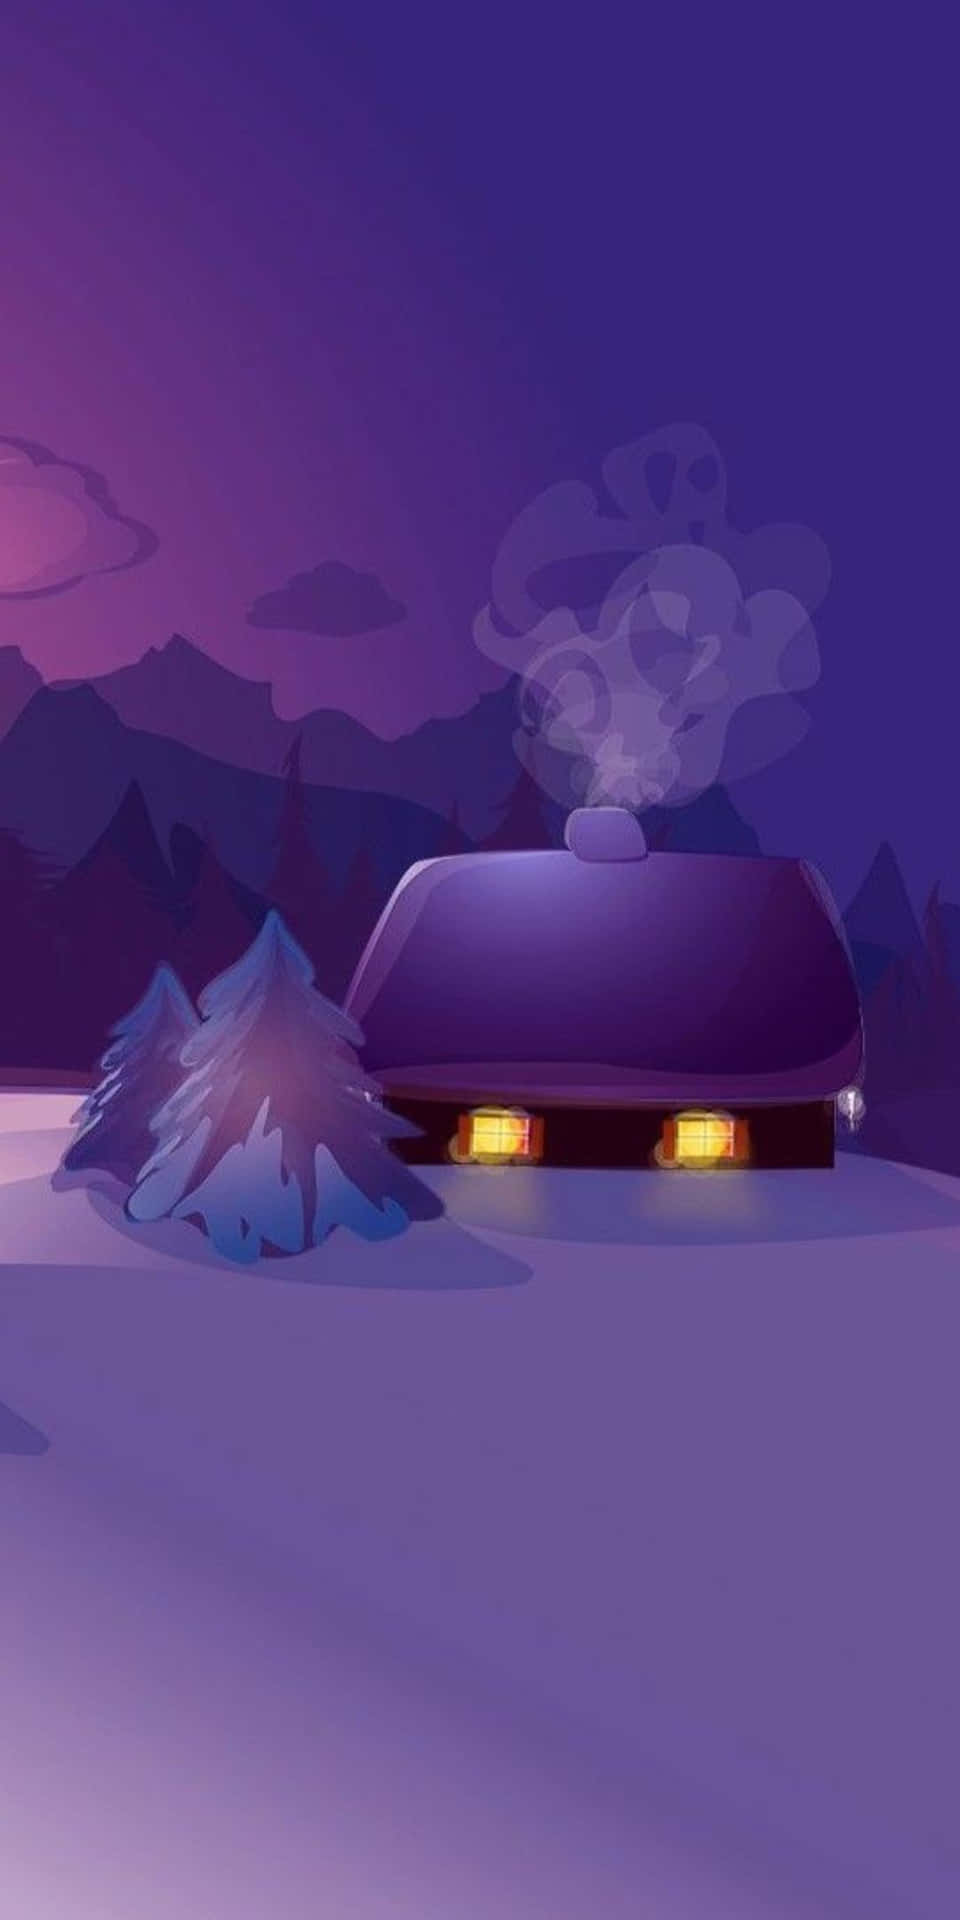 Pixel3 Winter Hintergrund, Hütte Zeichnung, Violetter Hintergrund